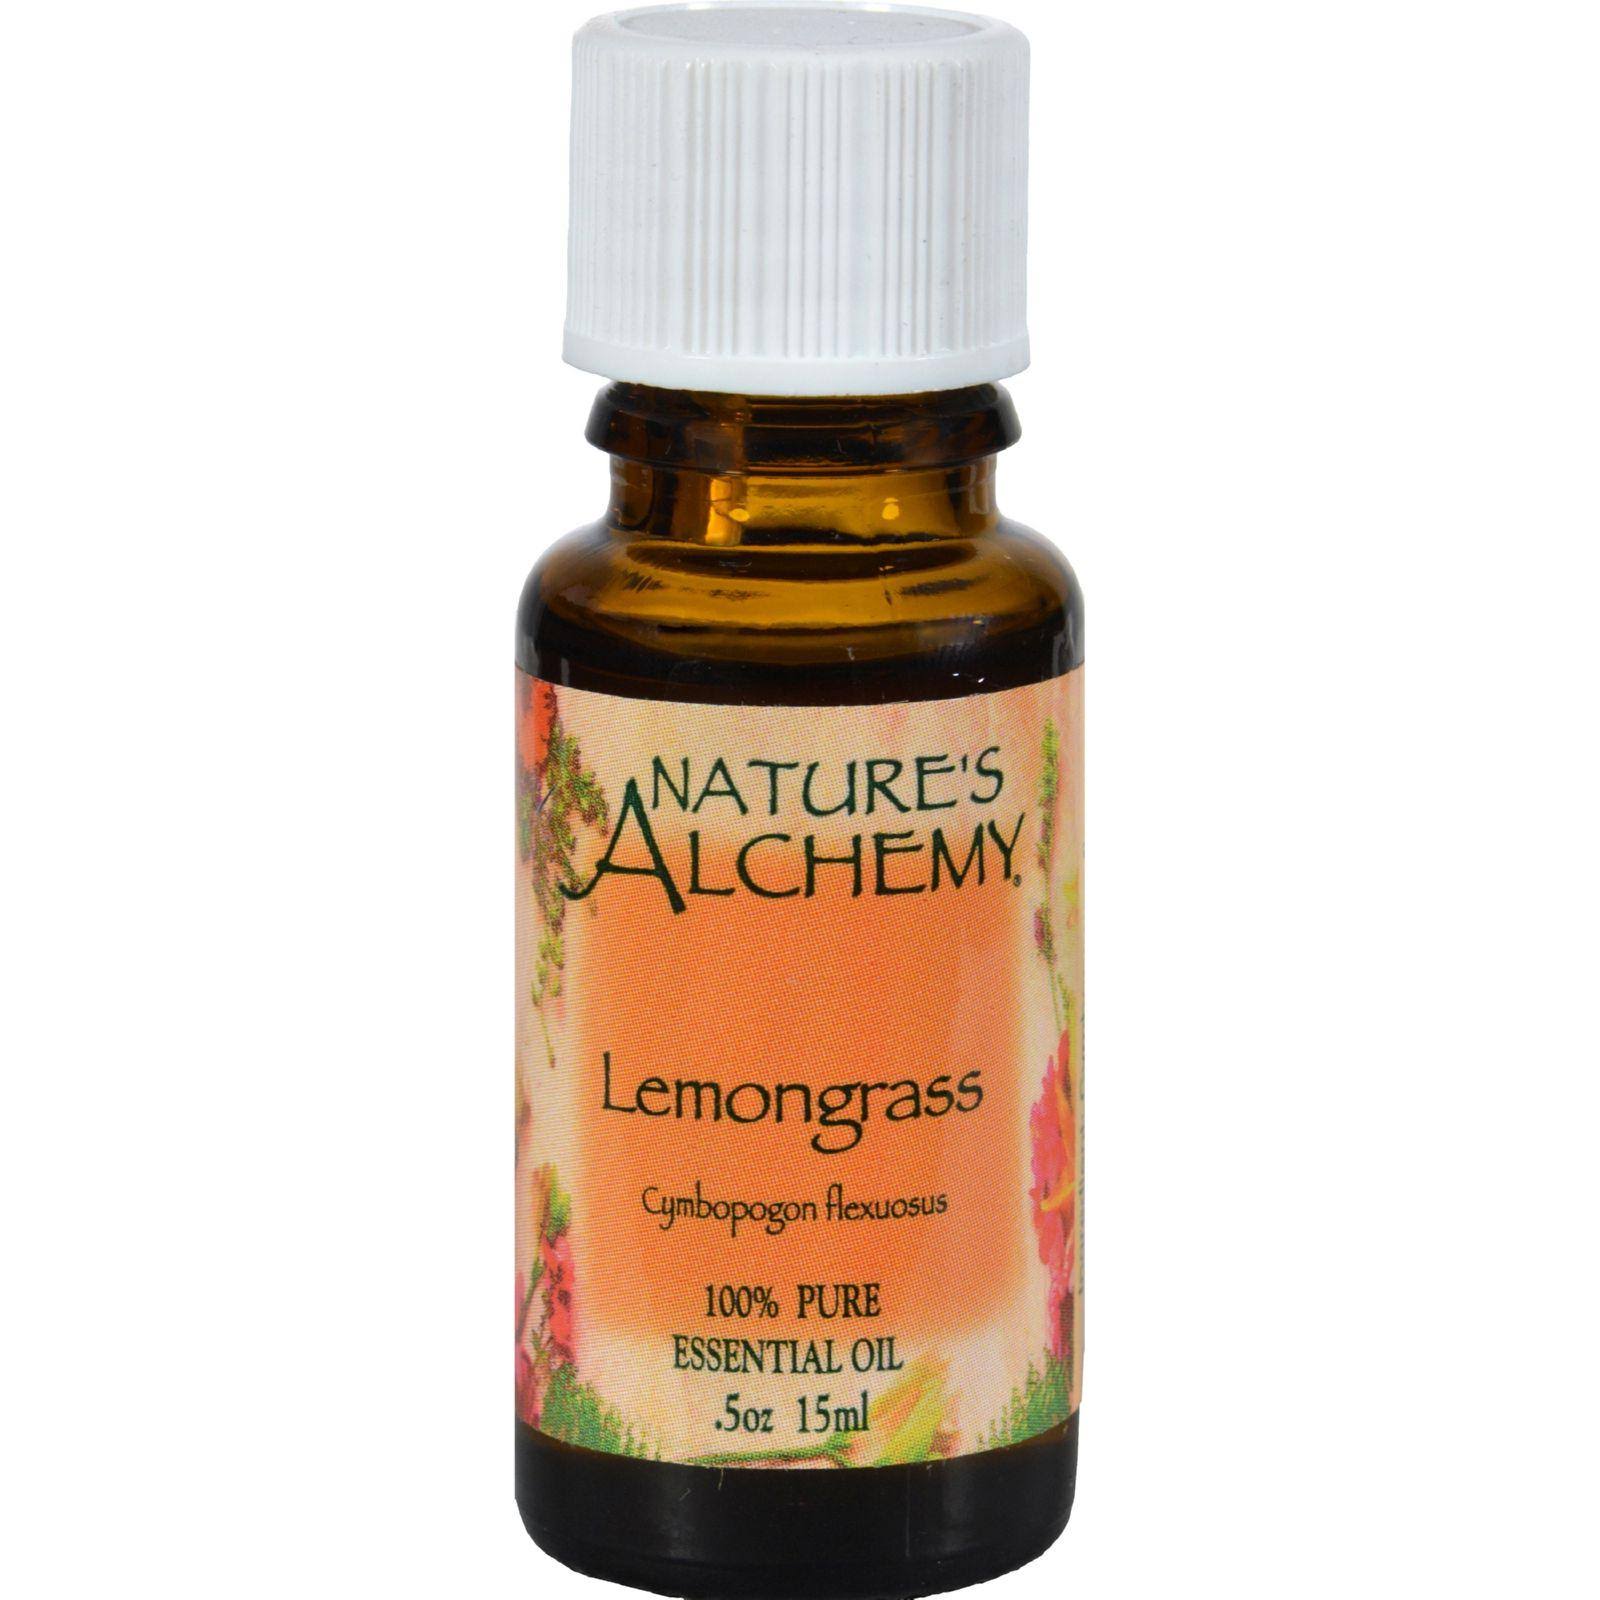 Nature's Alchemy 100% Pure Essential Oil - Lemongrass, 0.5 fl oz